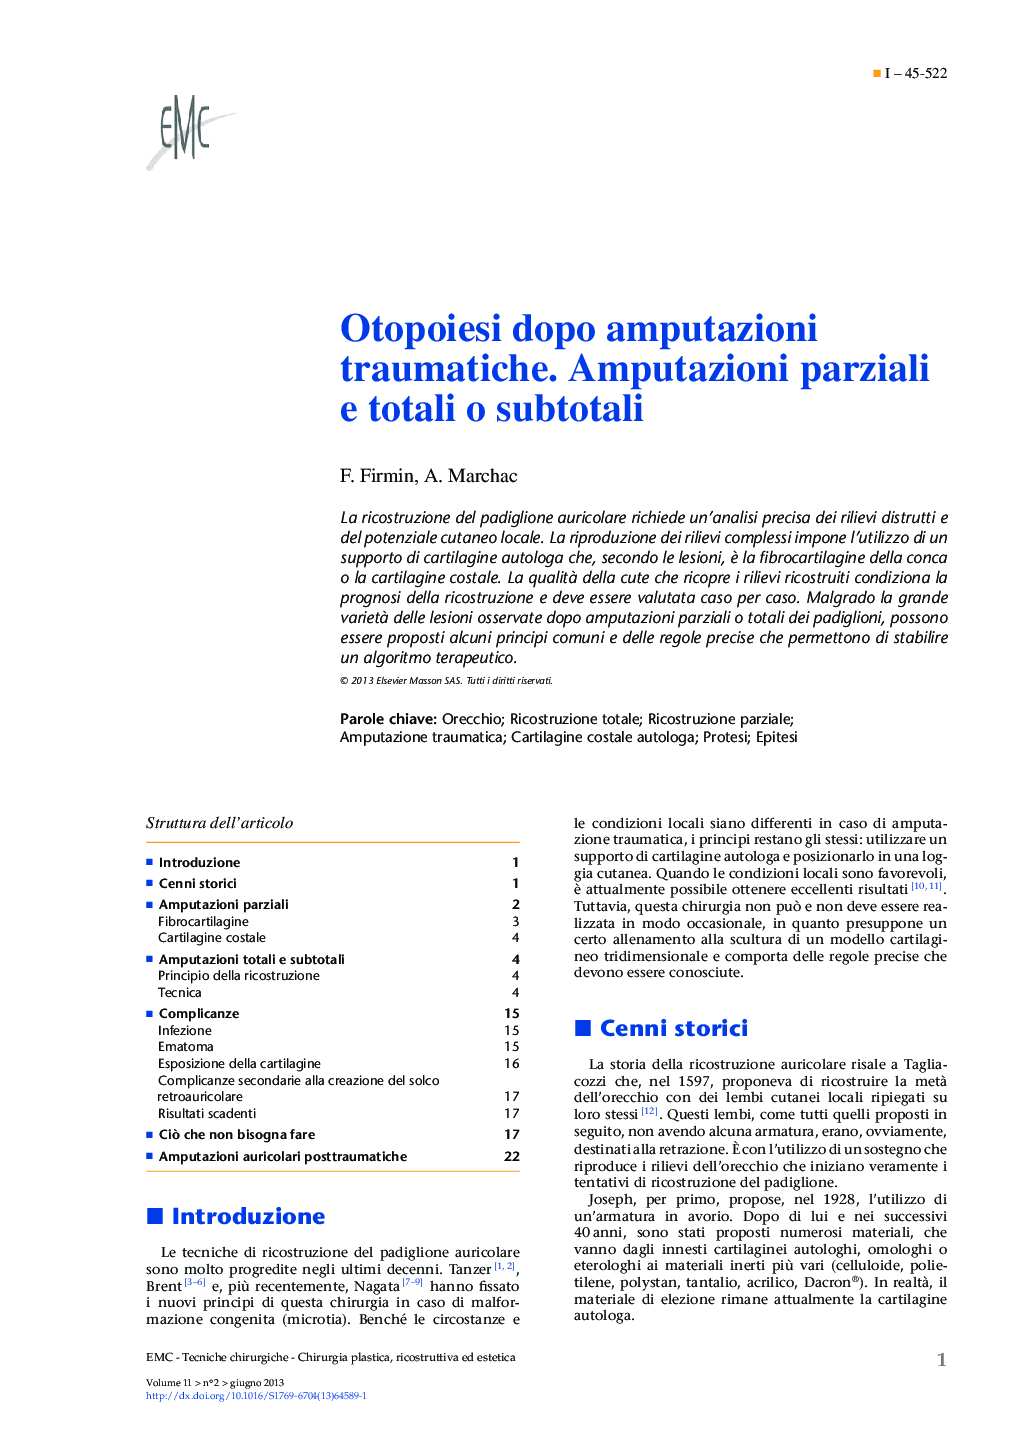 Otopoiesi dopo amputazioni traumatiche. Amputazioni parziali e totali o subtotali